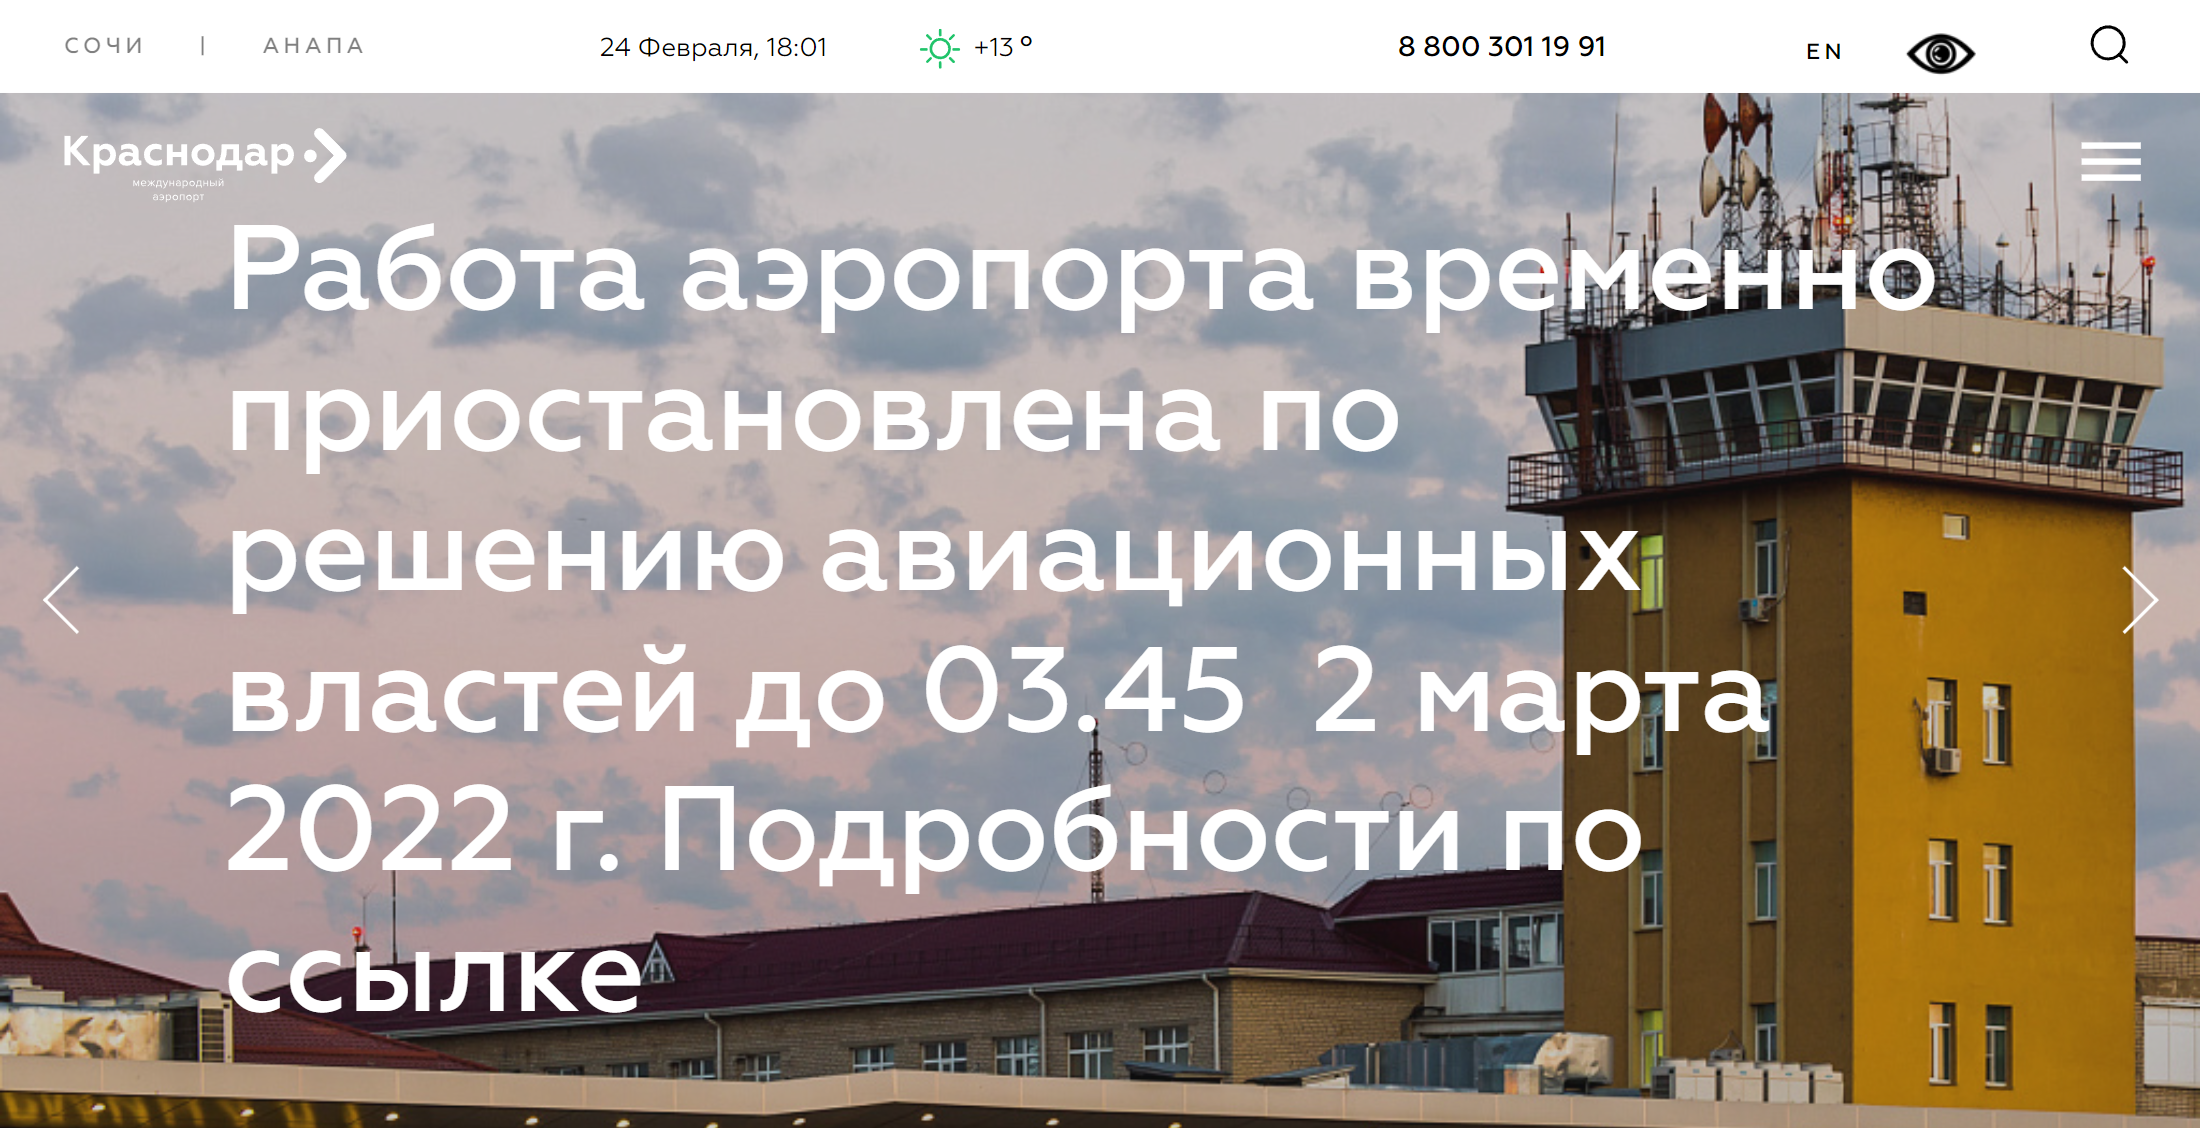 Объявление о приостановке работы на главной странице сайта краснодарского аэропорта. Источник: krr.aero